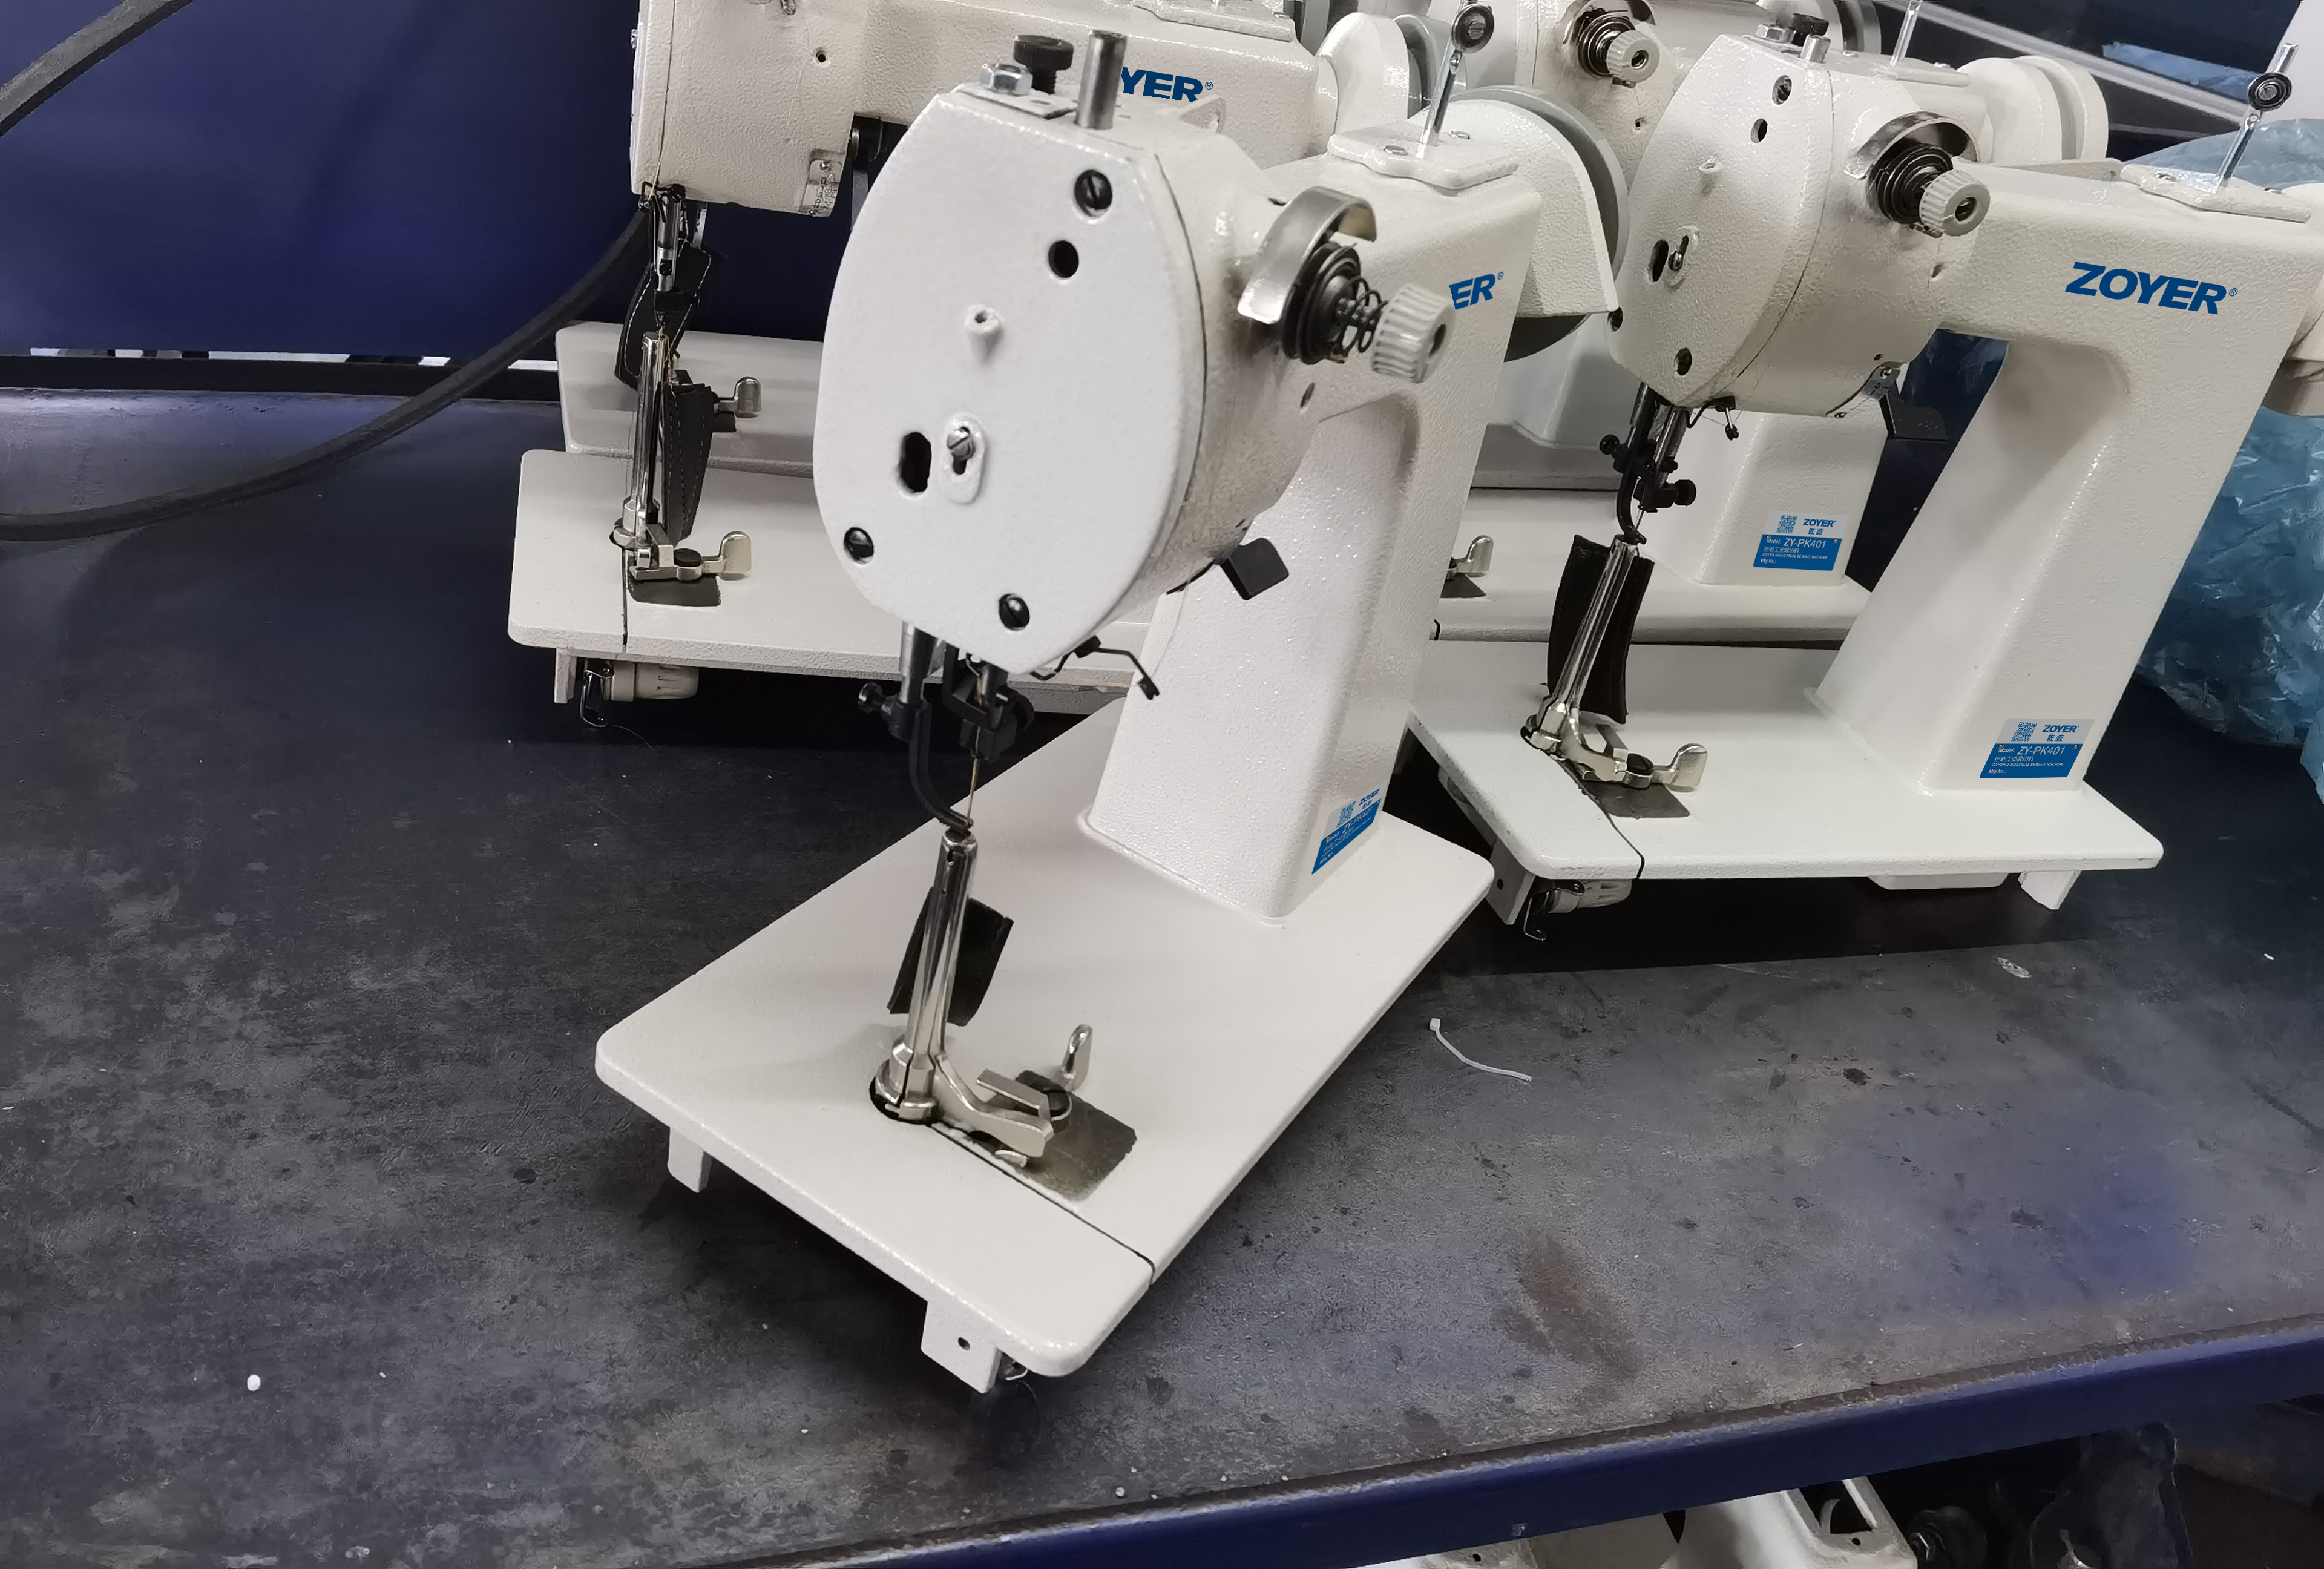 ZY-PK401 Máquina de coser industrial de guante de puntada de cadena de aguja única